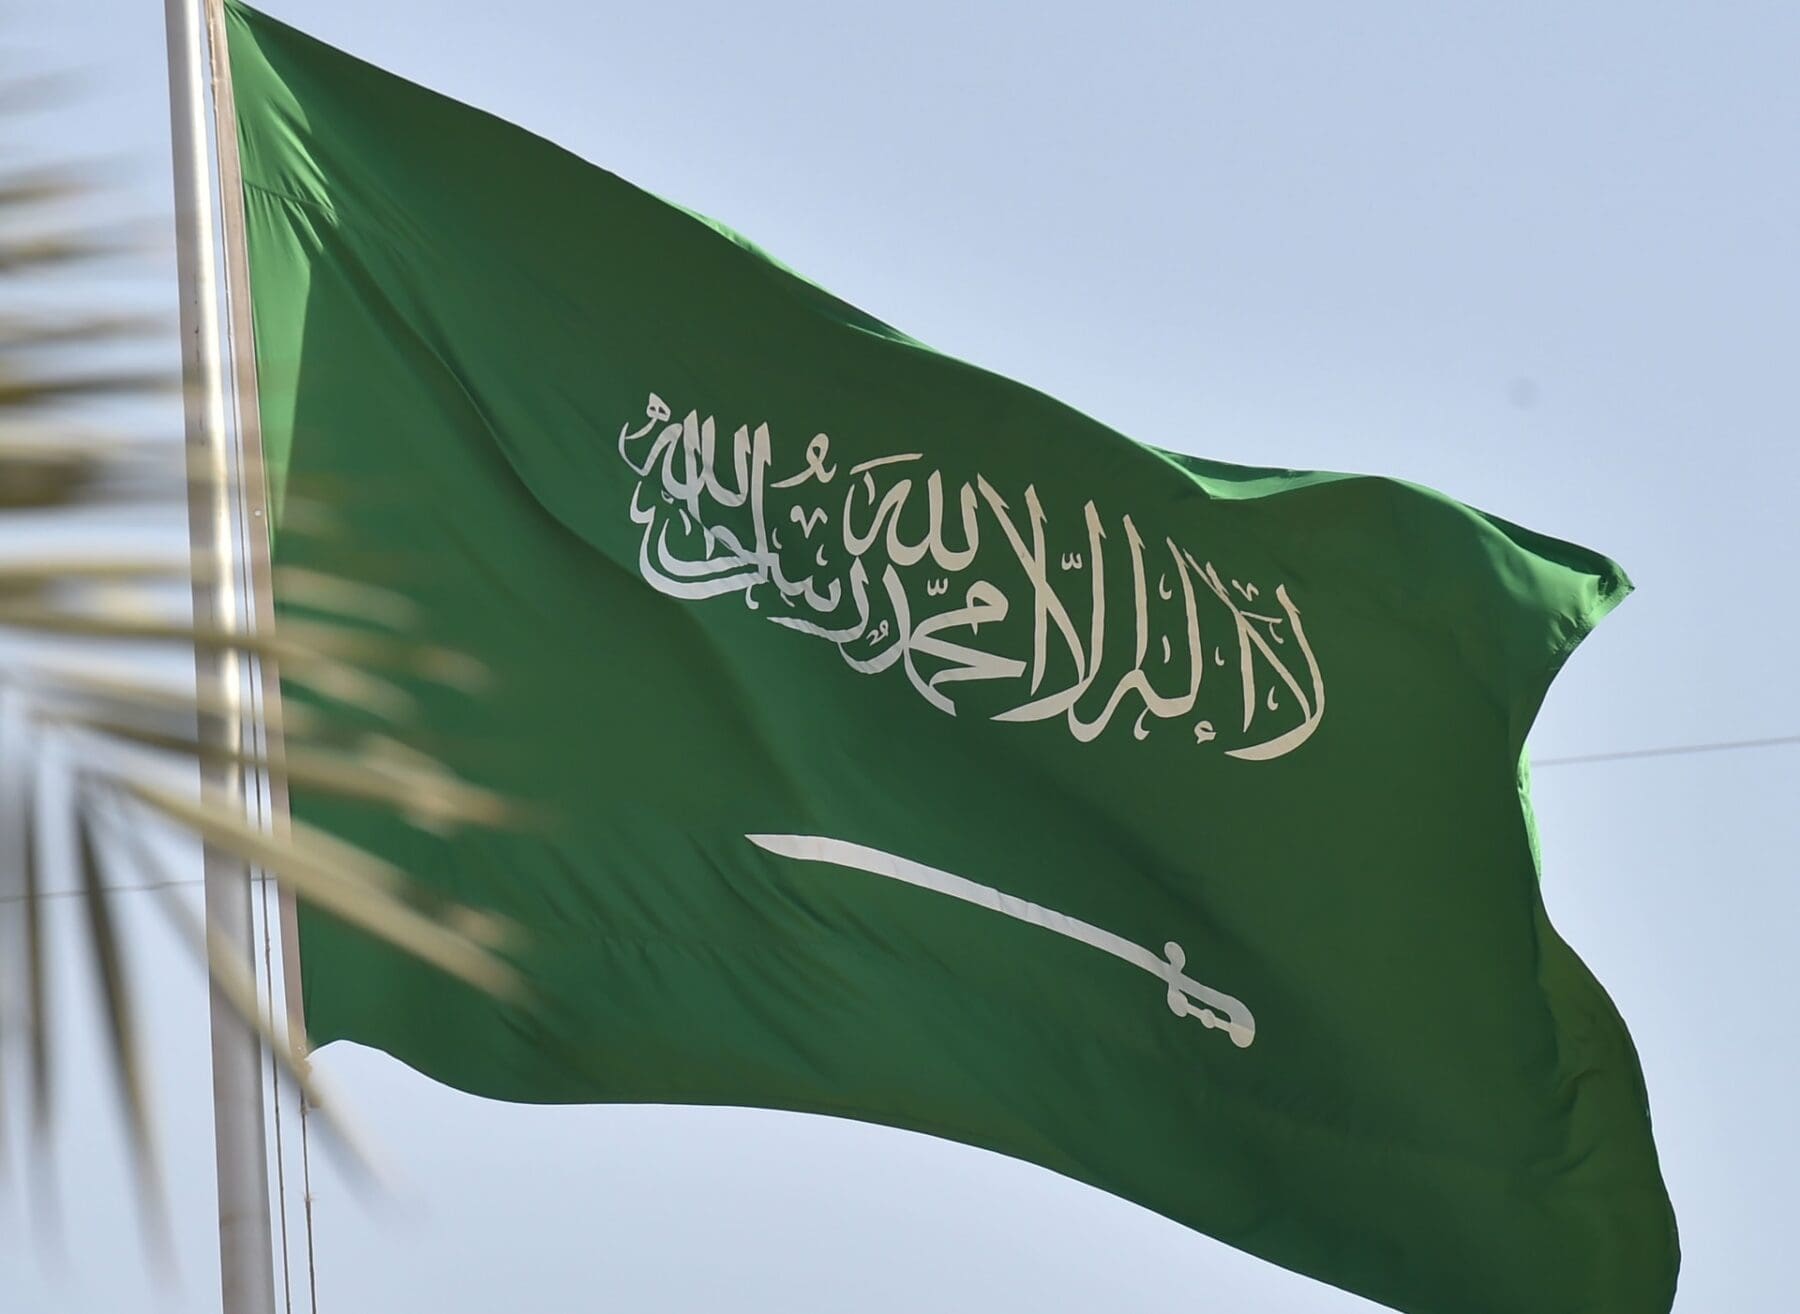 بيان من وزارة الخارجية السعودية بشأن الهجوم الإرهابي الذي استهدف قاعدة عسكرية أمريكية بالحدود الأردنية السورية